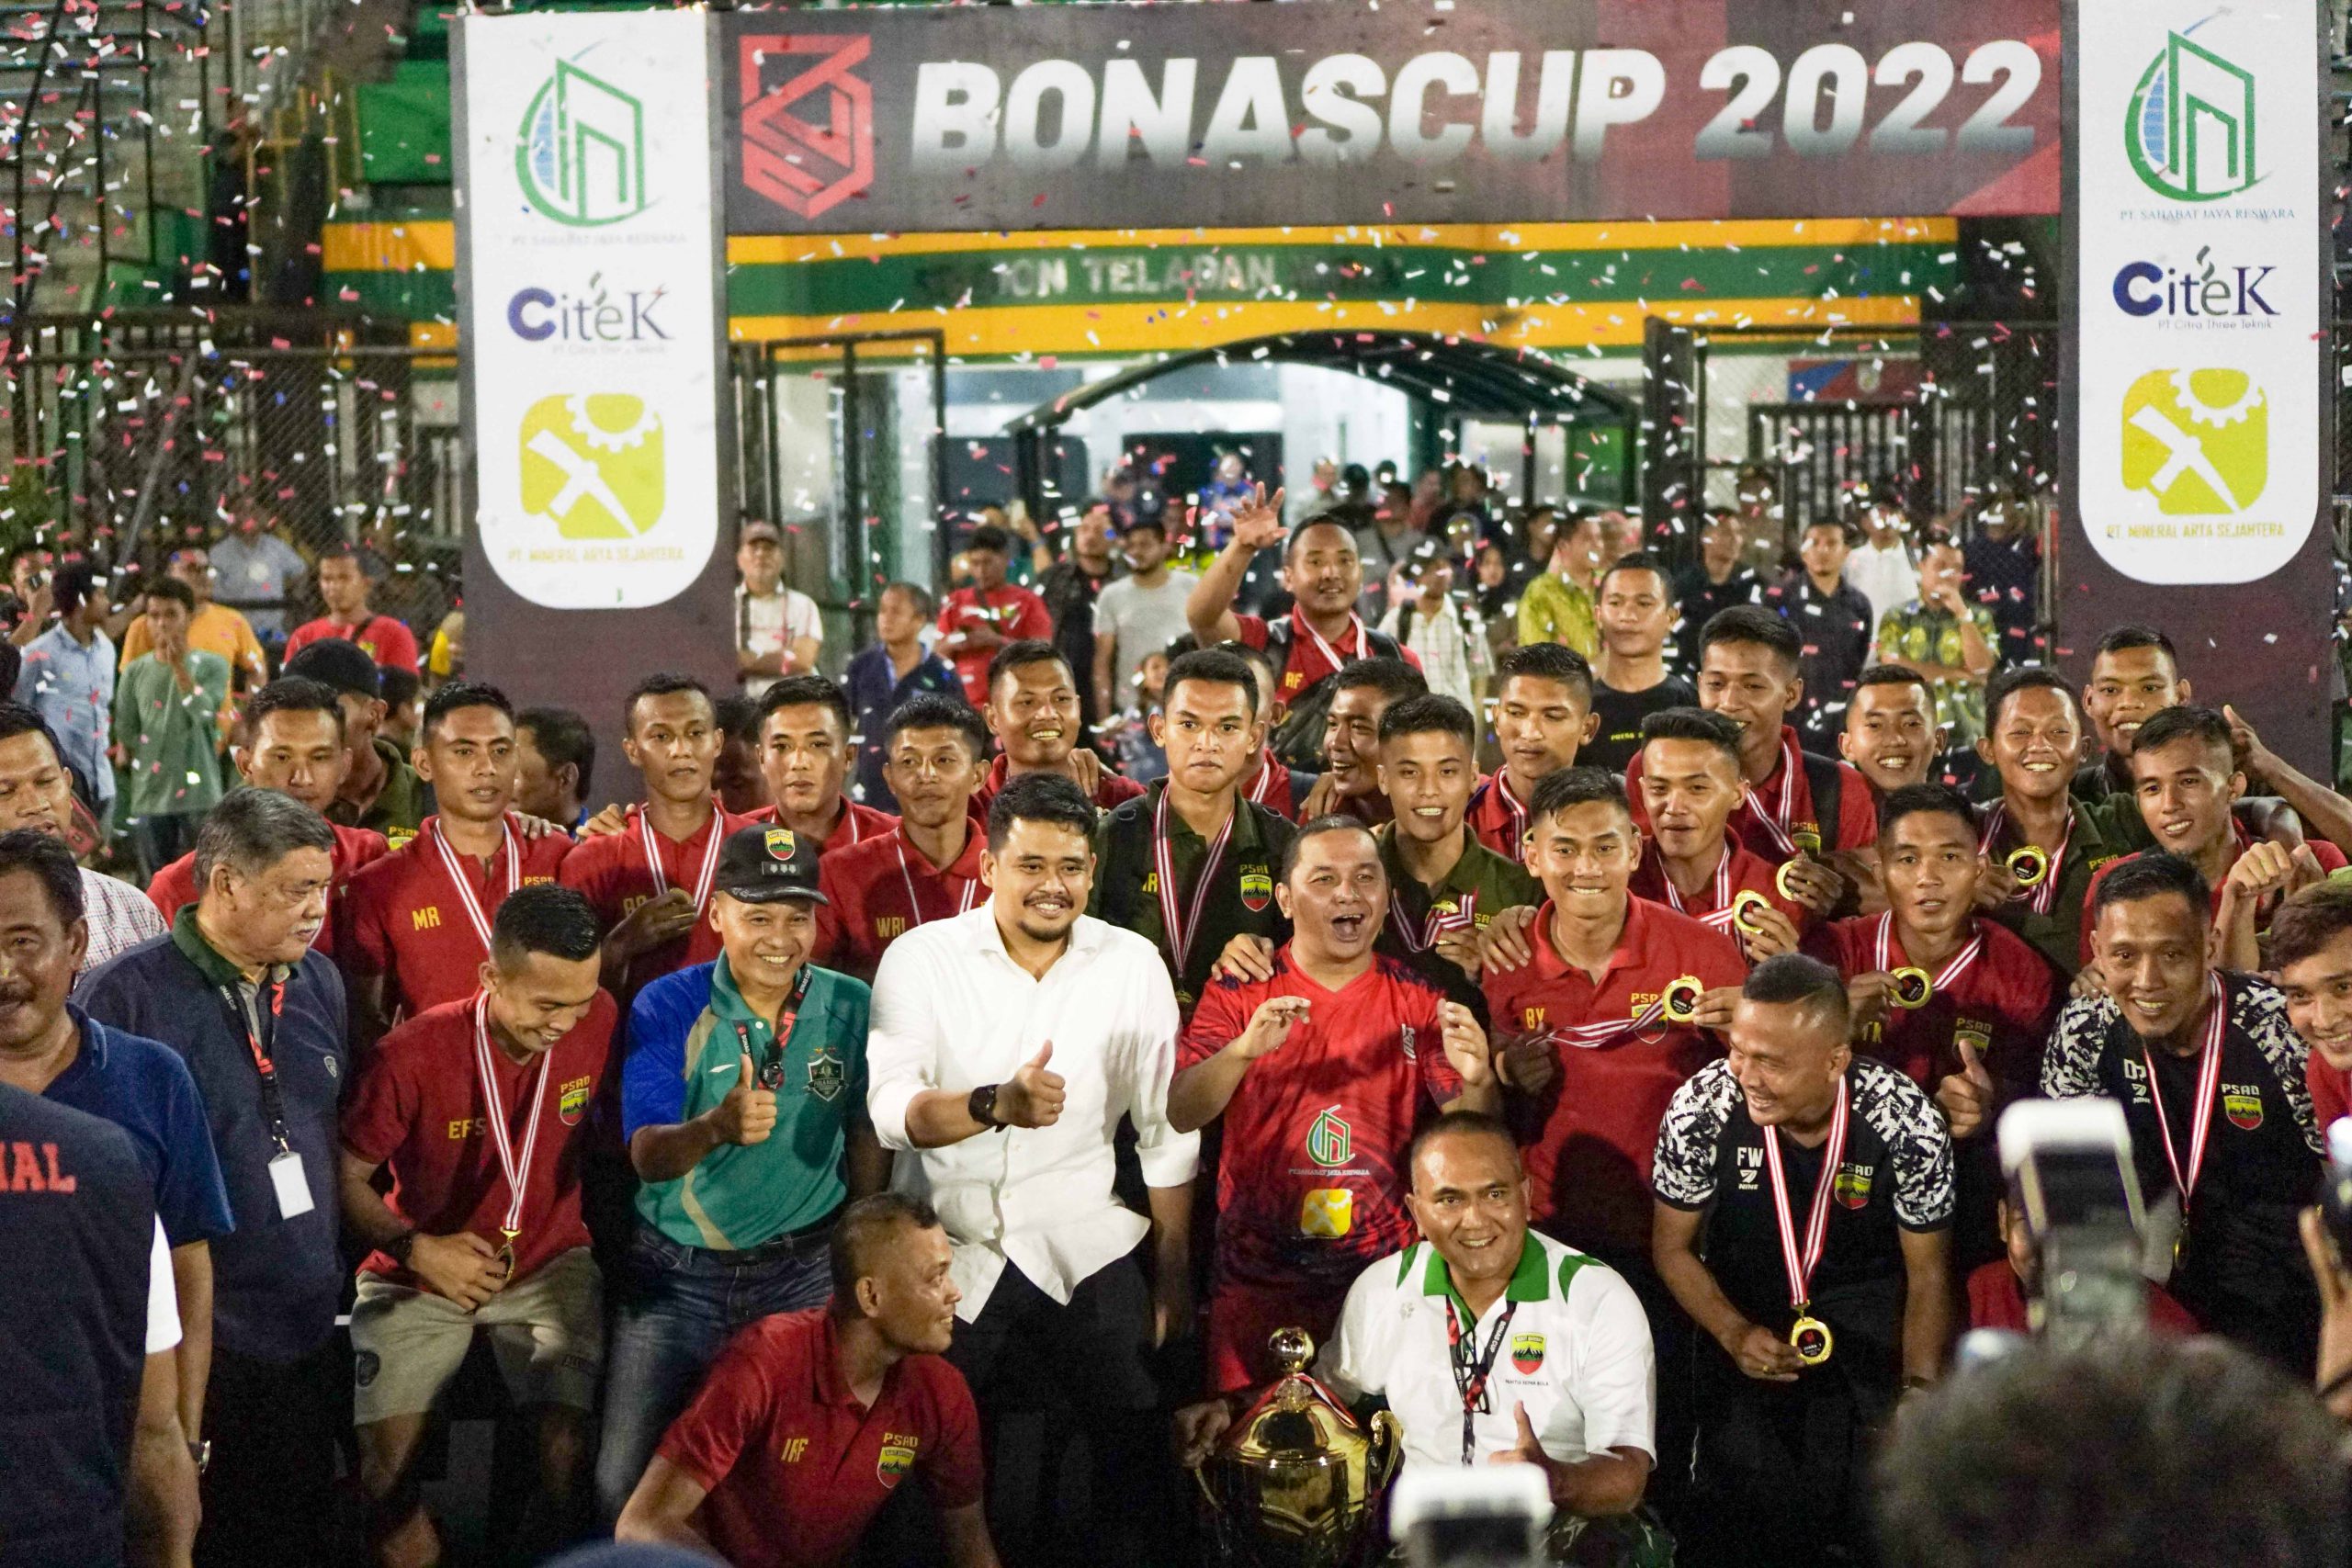 Bobby Nasution Berharap Bonas Cup 2022 Lahirkan Pesepakbola Sumut di Ajang Nasional dan Internasional